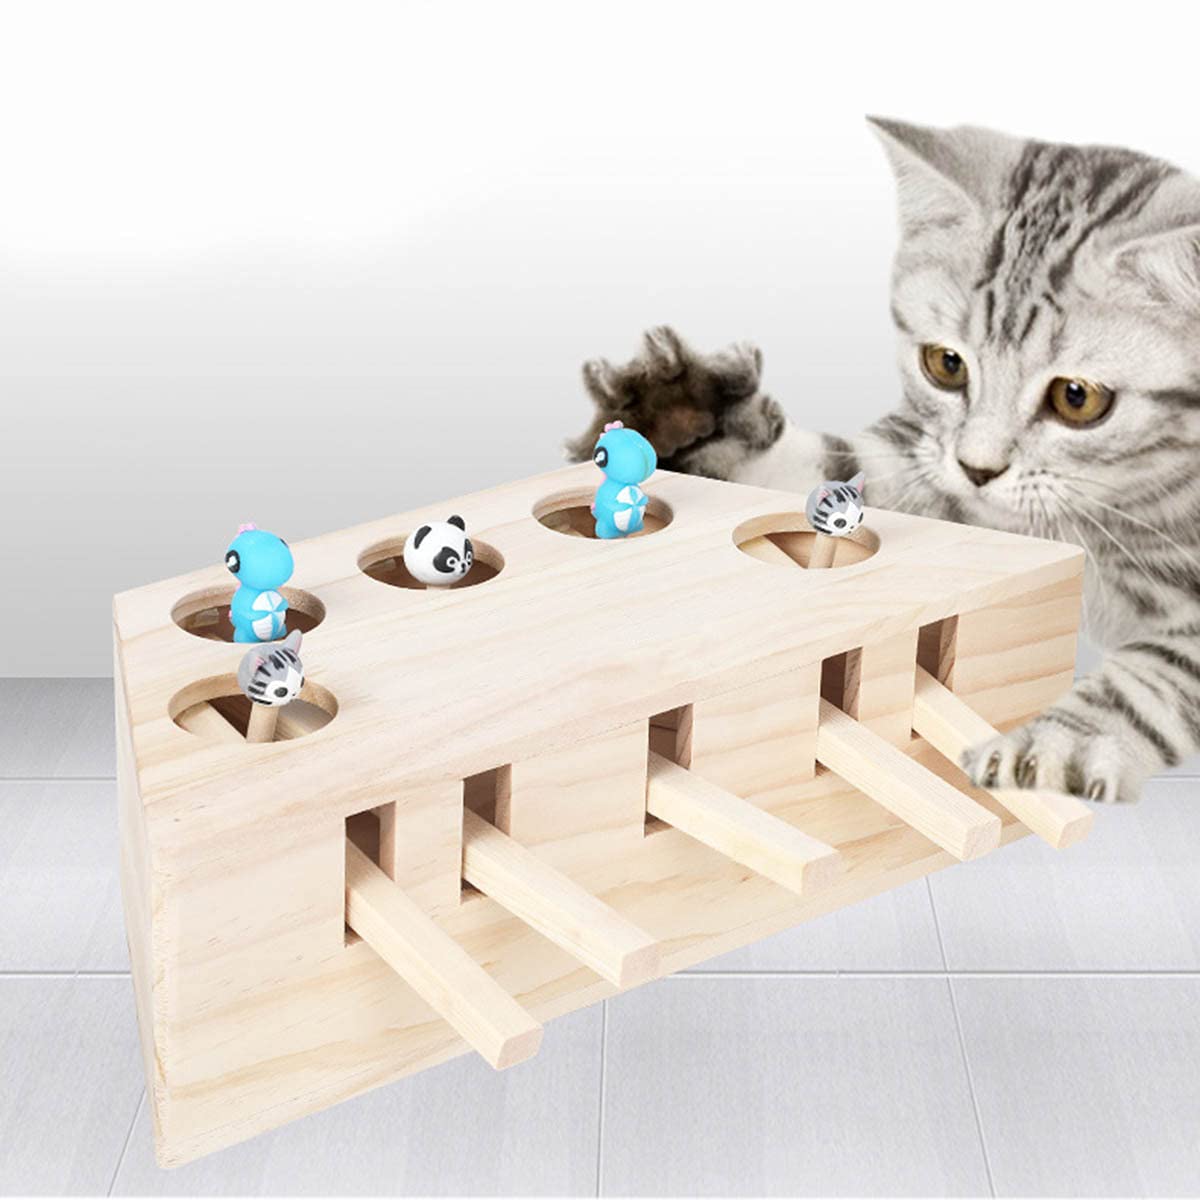 Haokaini Katzenspielzeug Maus Schlag Maulwurf Maus Interaktives Spielzeug Kätzchen Jagd Spielzeug Puzzle Box mit Cartoon Maus Katze Schlag Spiel für Katze Spielen Kratzbiss